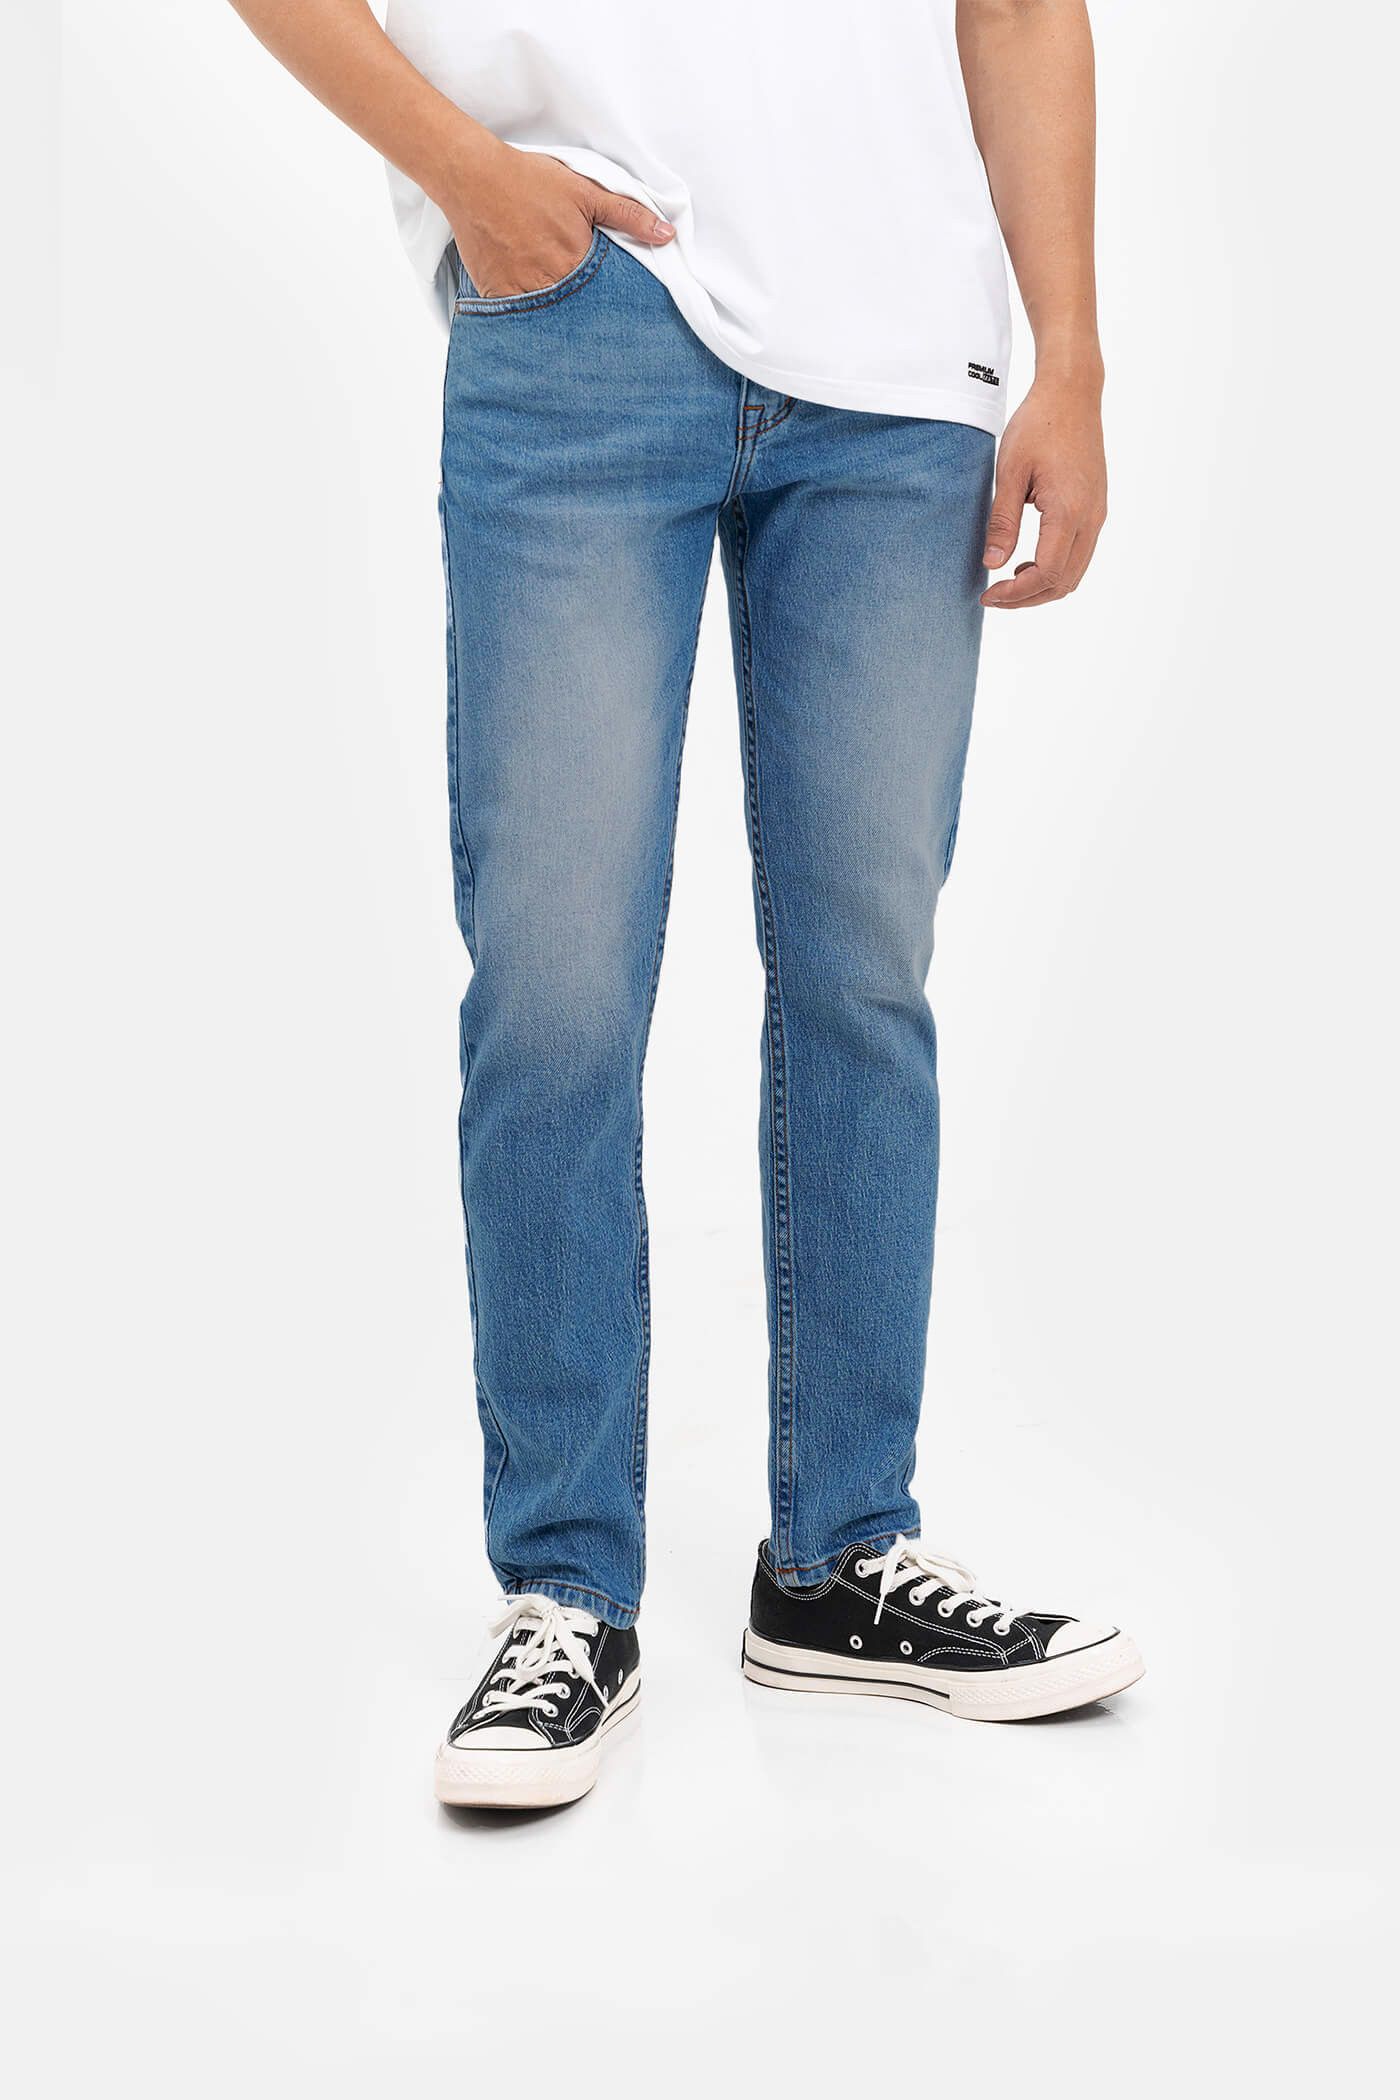 FLASH SALE - Quần Jeans Clean Denim dáng Slimfit  S3 Xanh nhạt